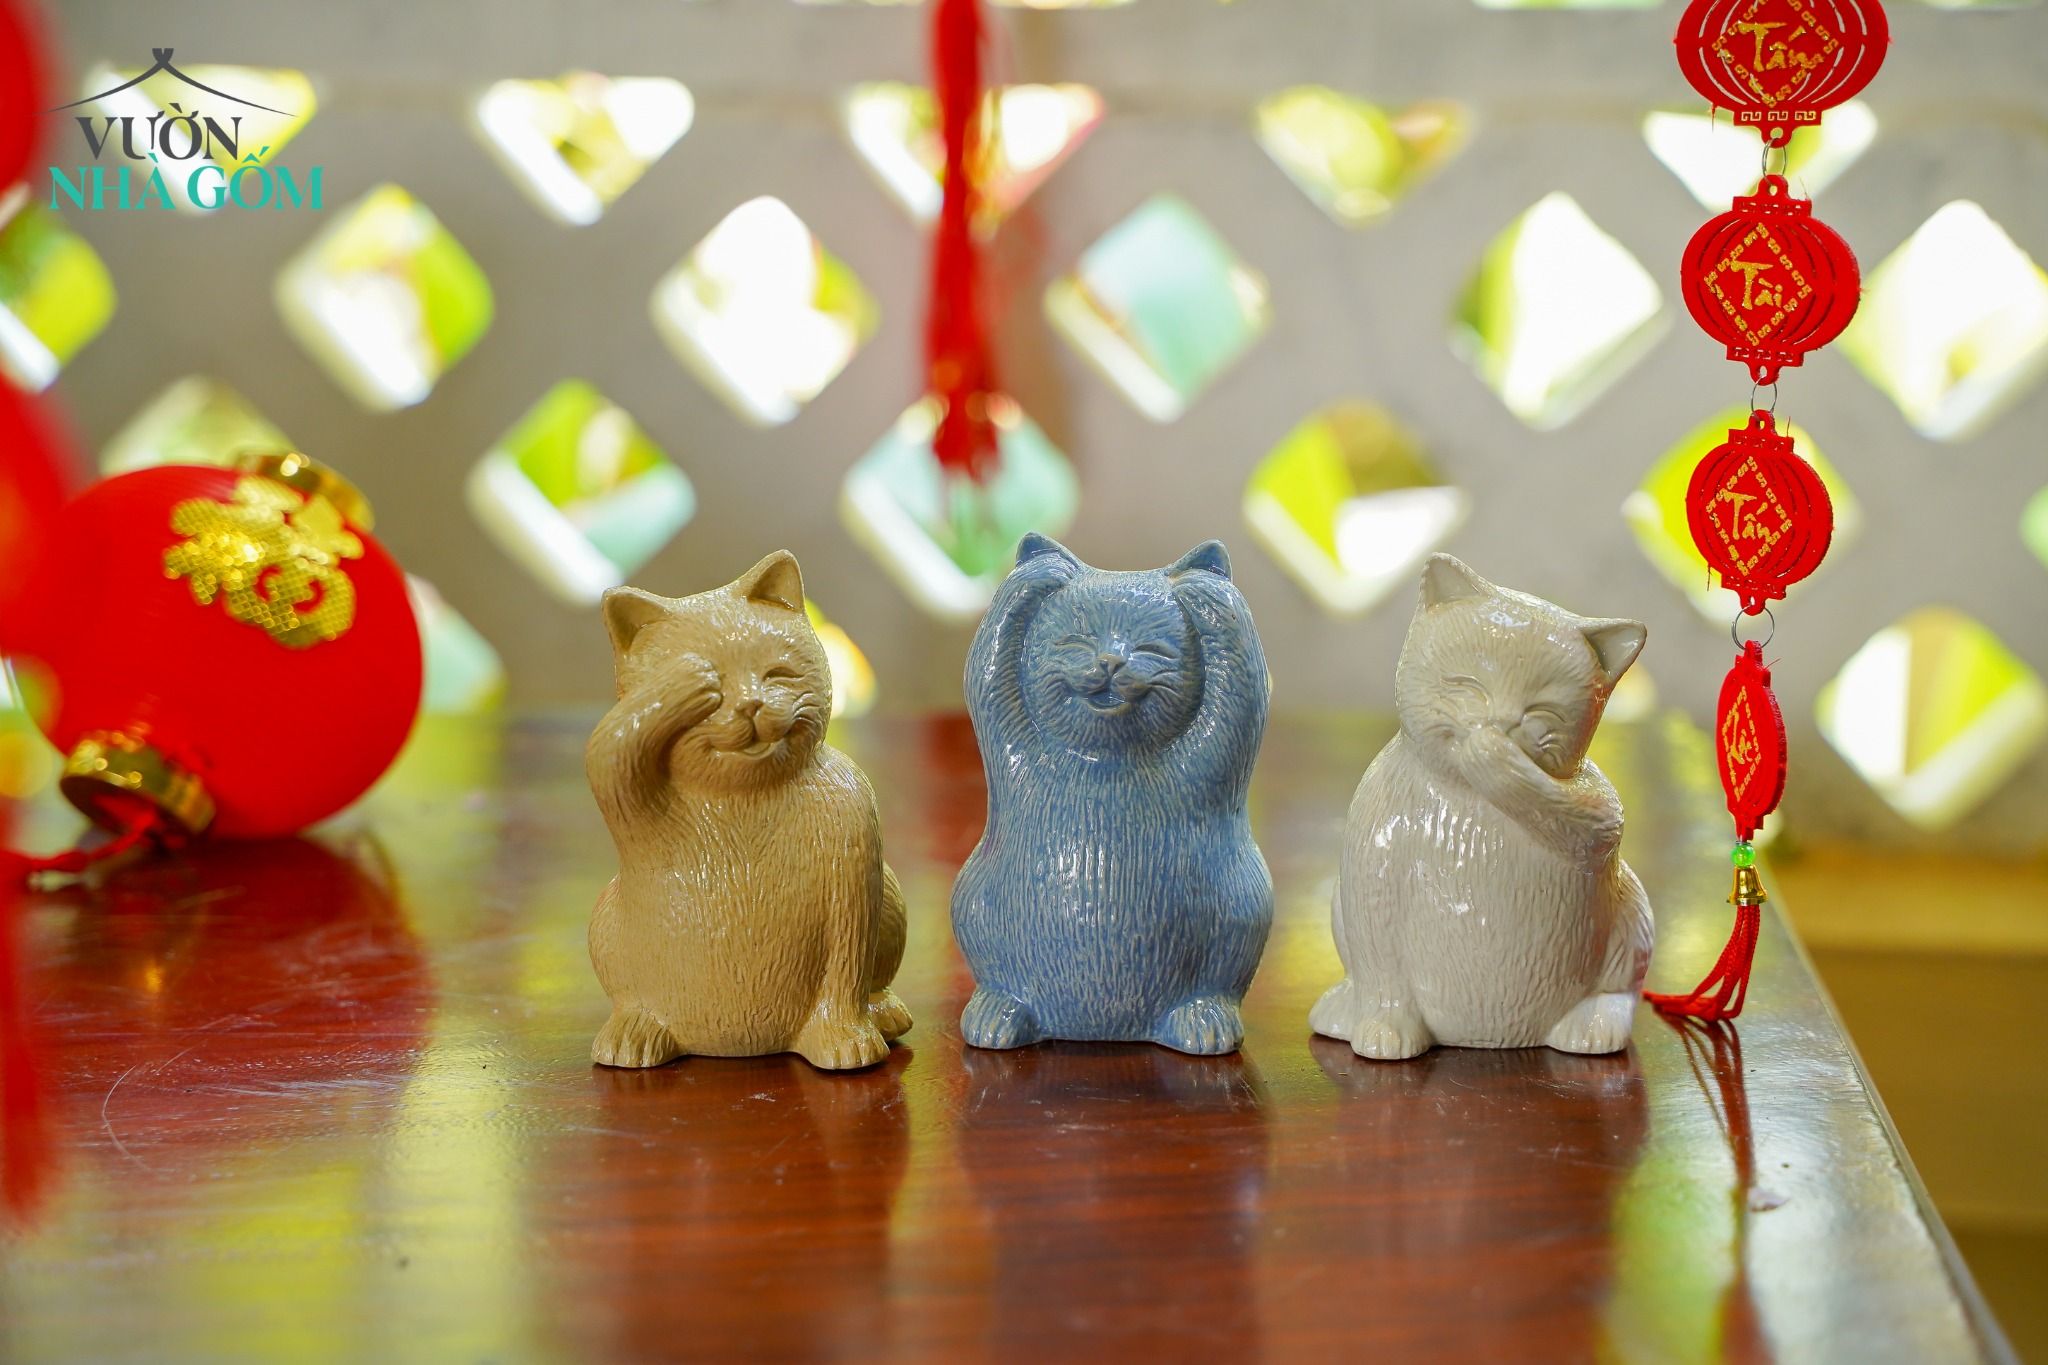  Bộ tượng Mèo Tam Không vui vẻ, 3 màu mocha - xanh dương - trắng, Gốm Thủ Biên, C11cm x R7cm 